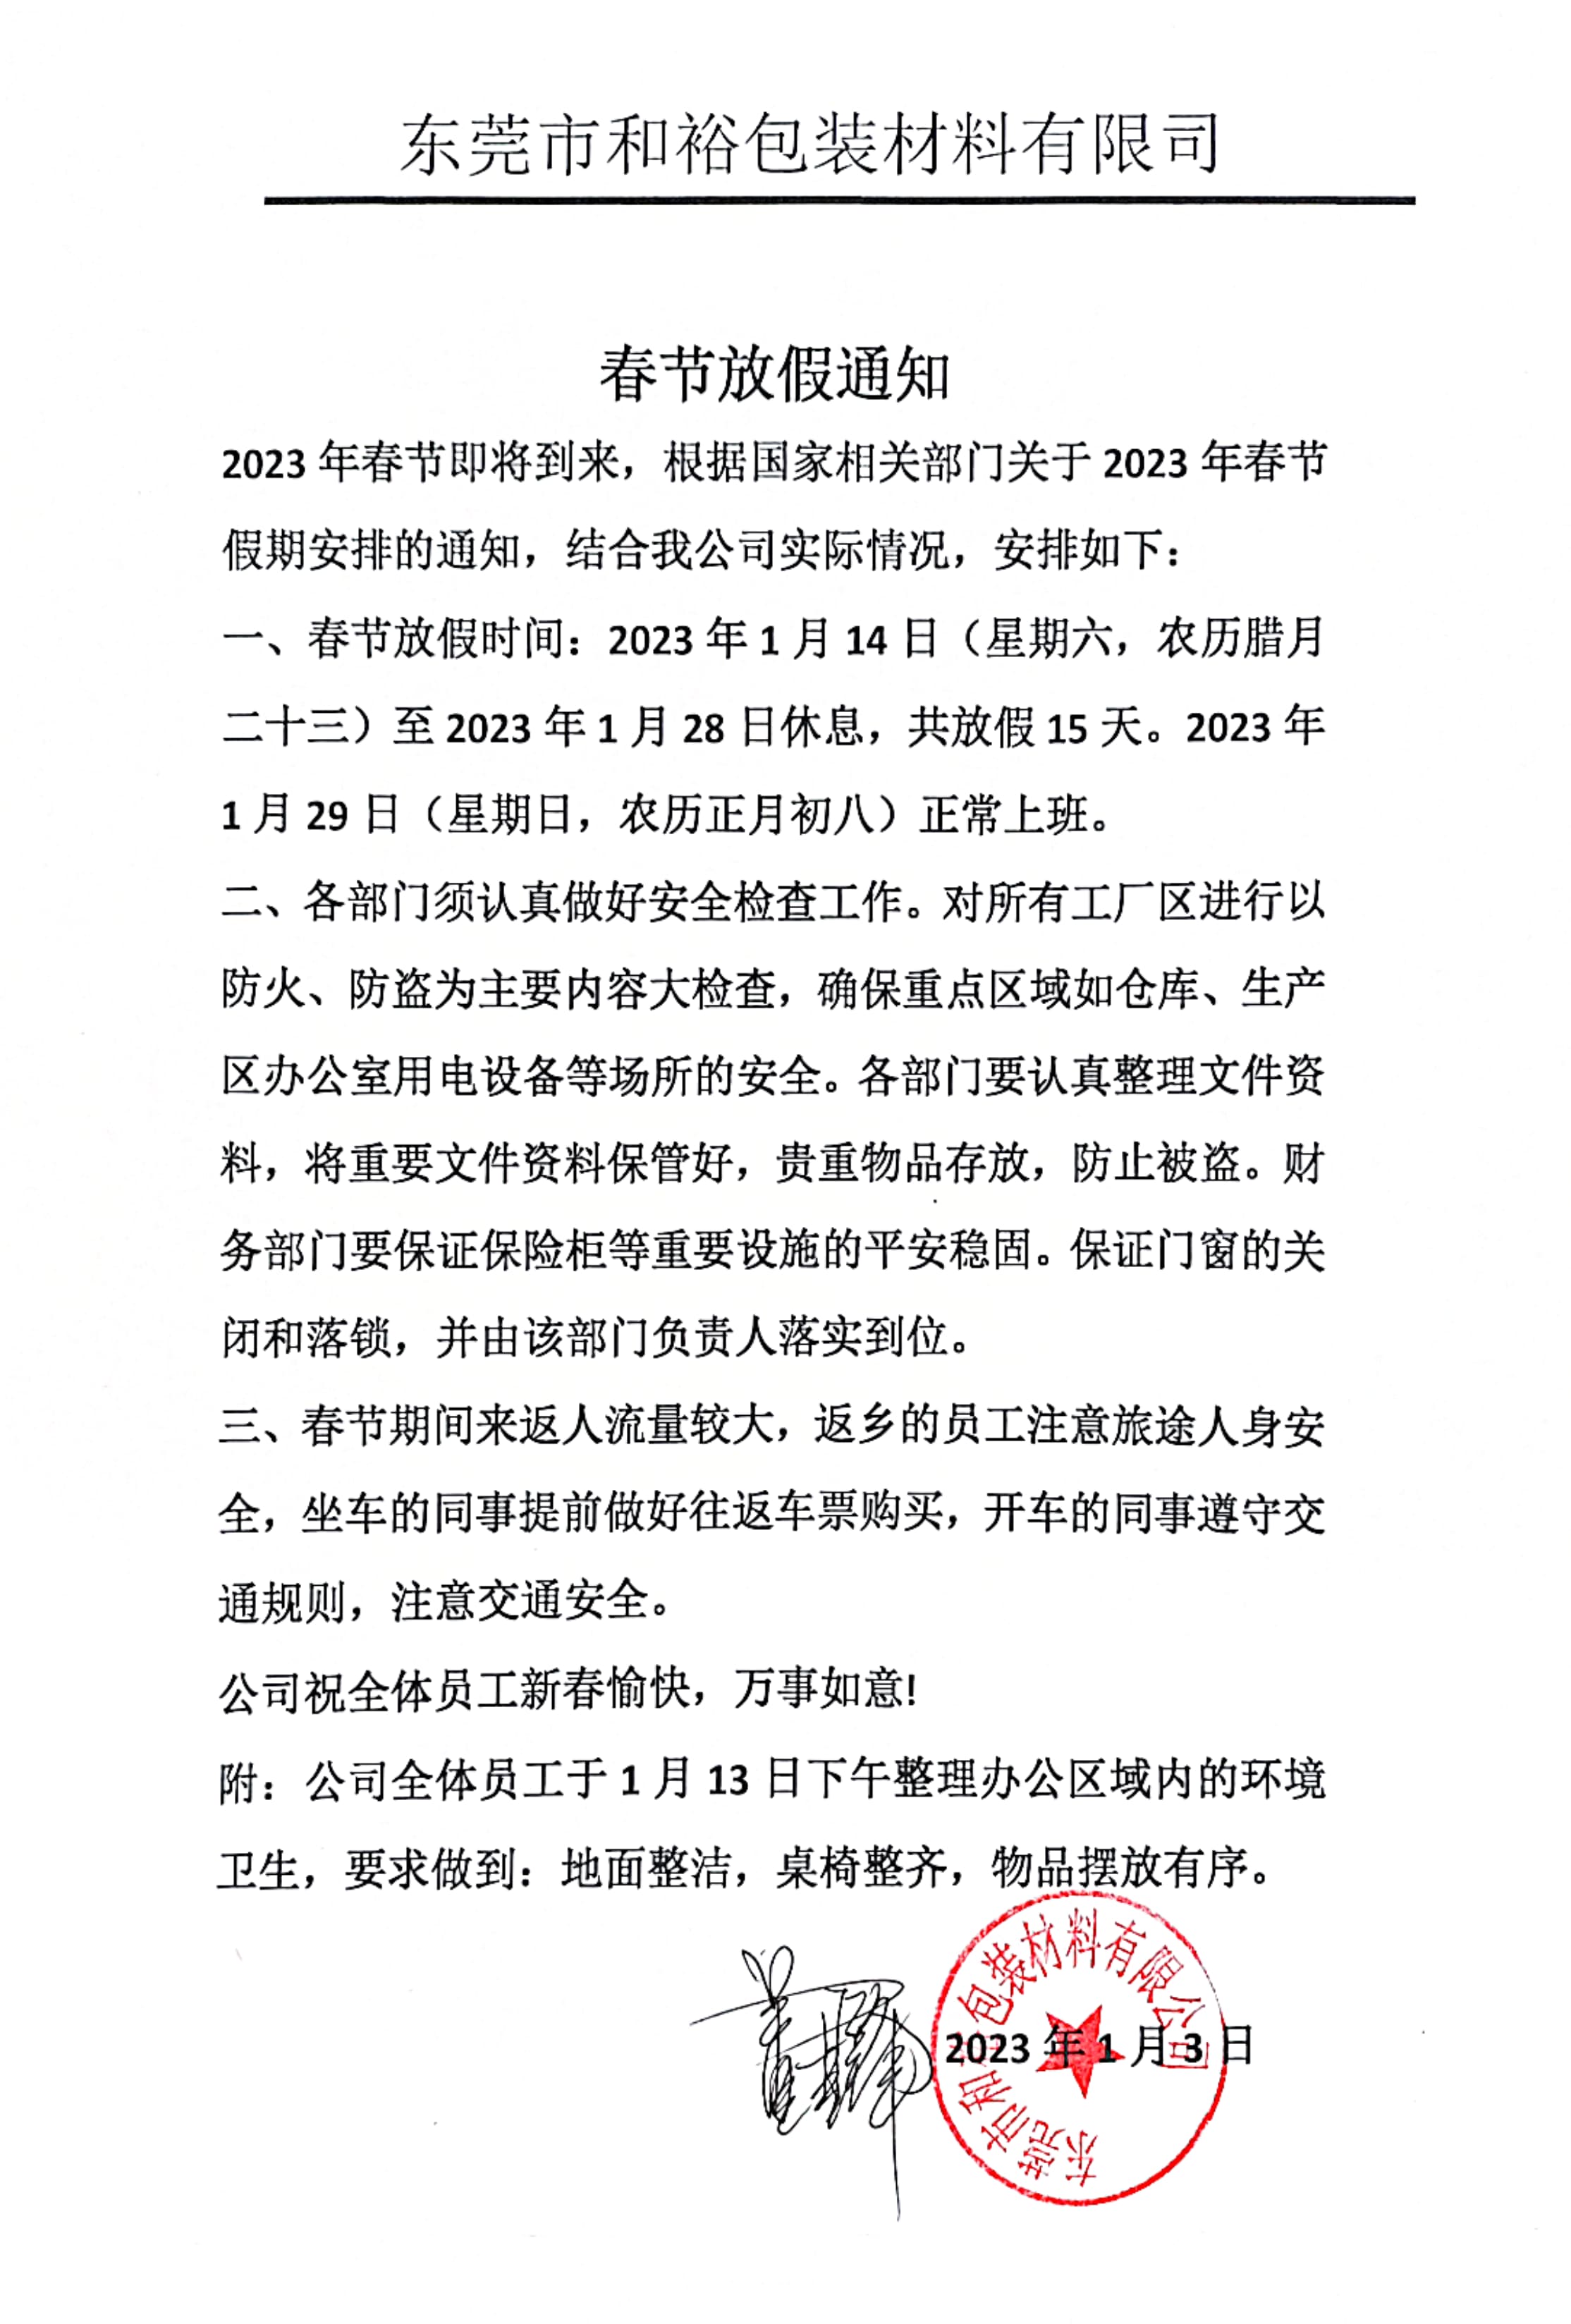 昌江黎族自治县2023年和裕包装春节放假通知